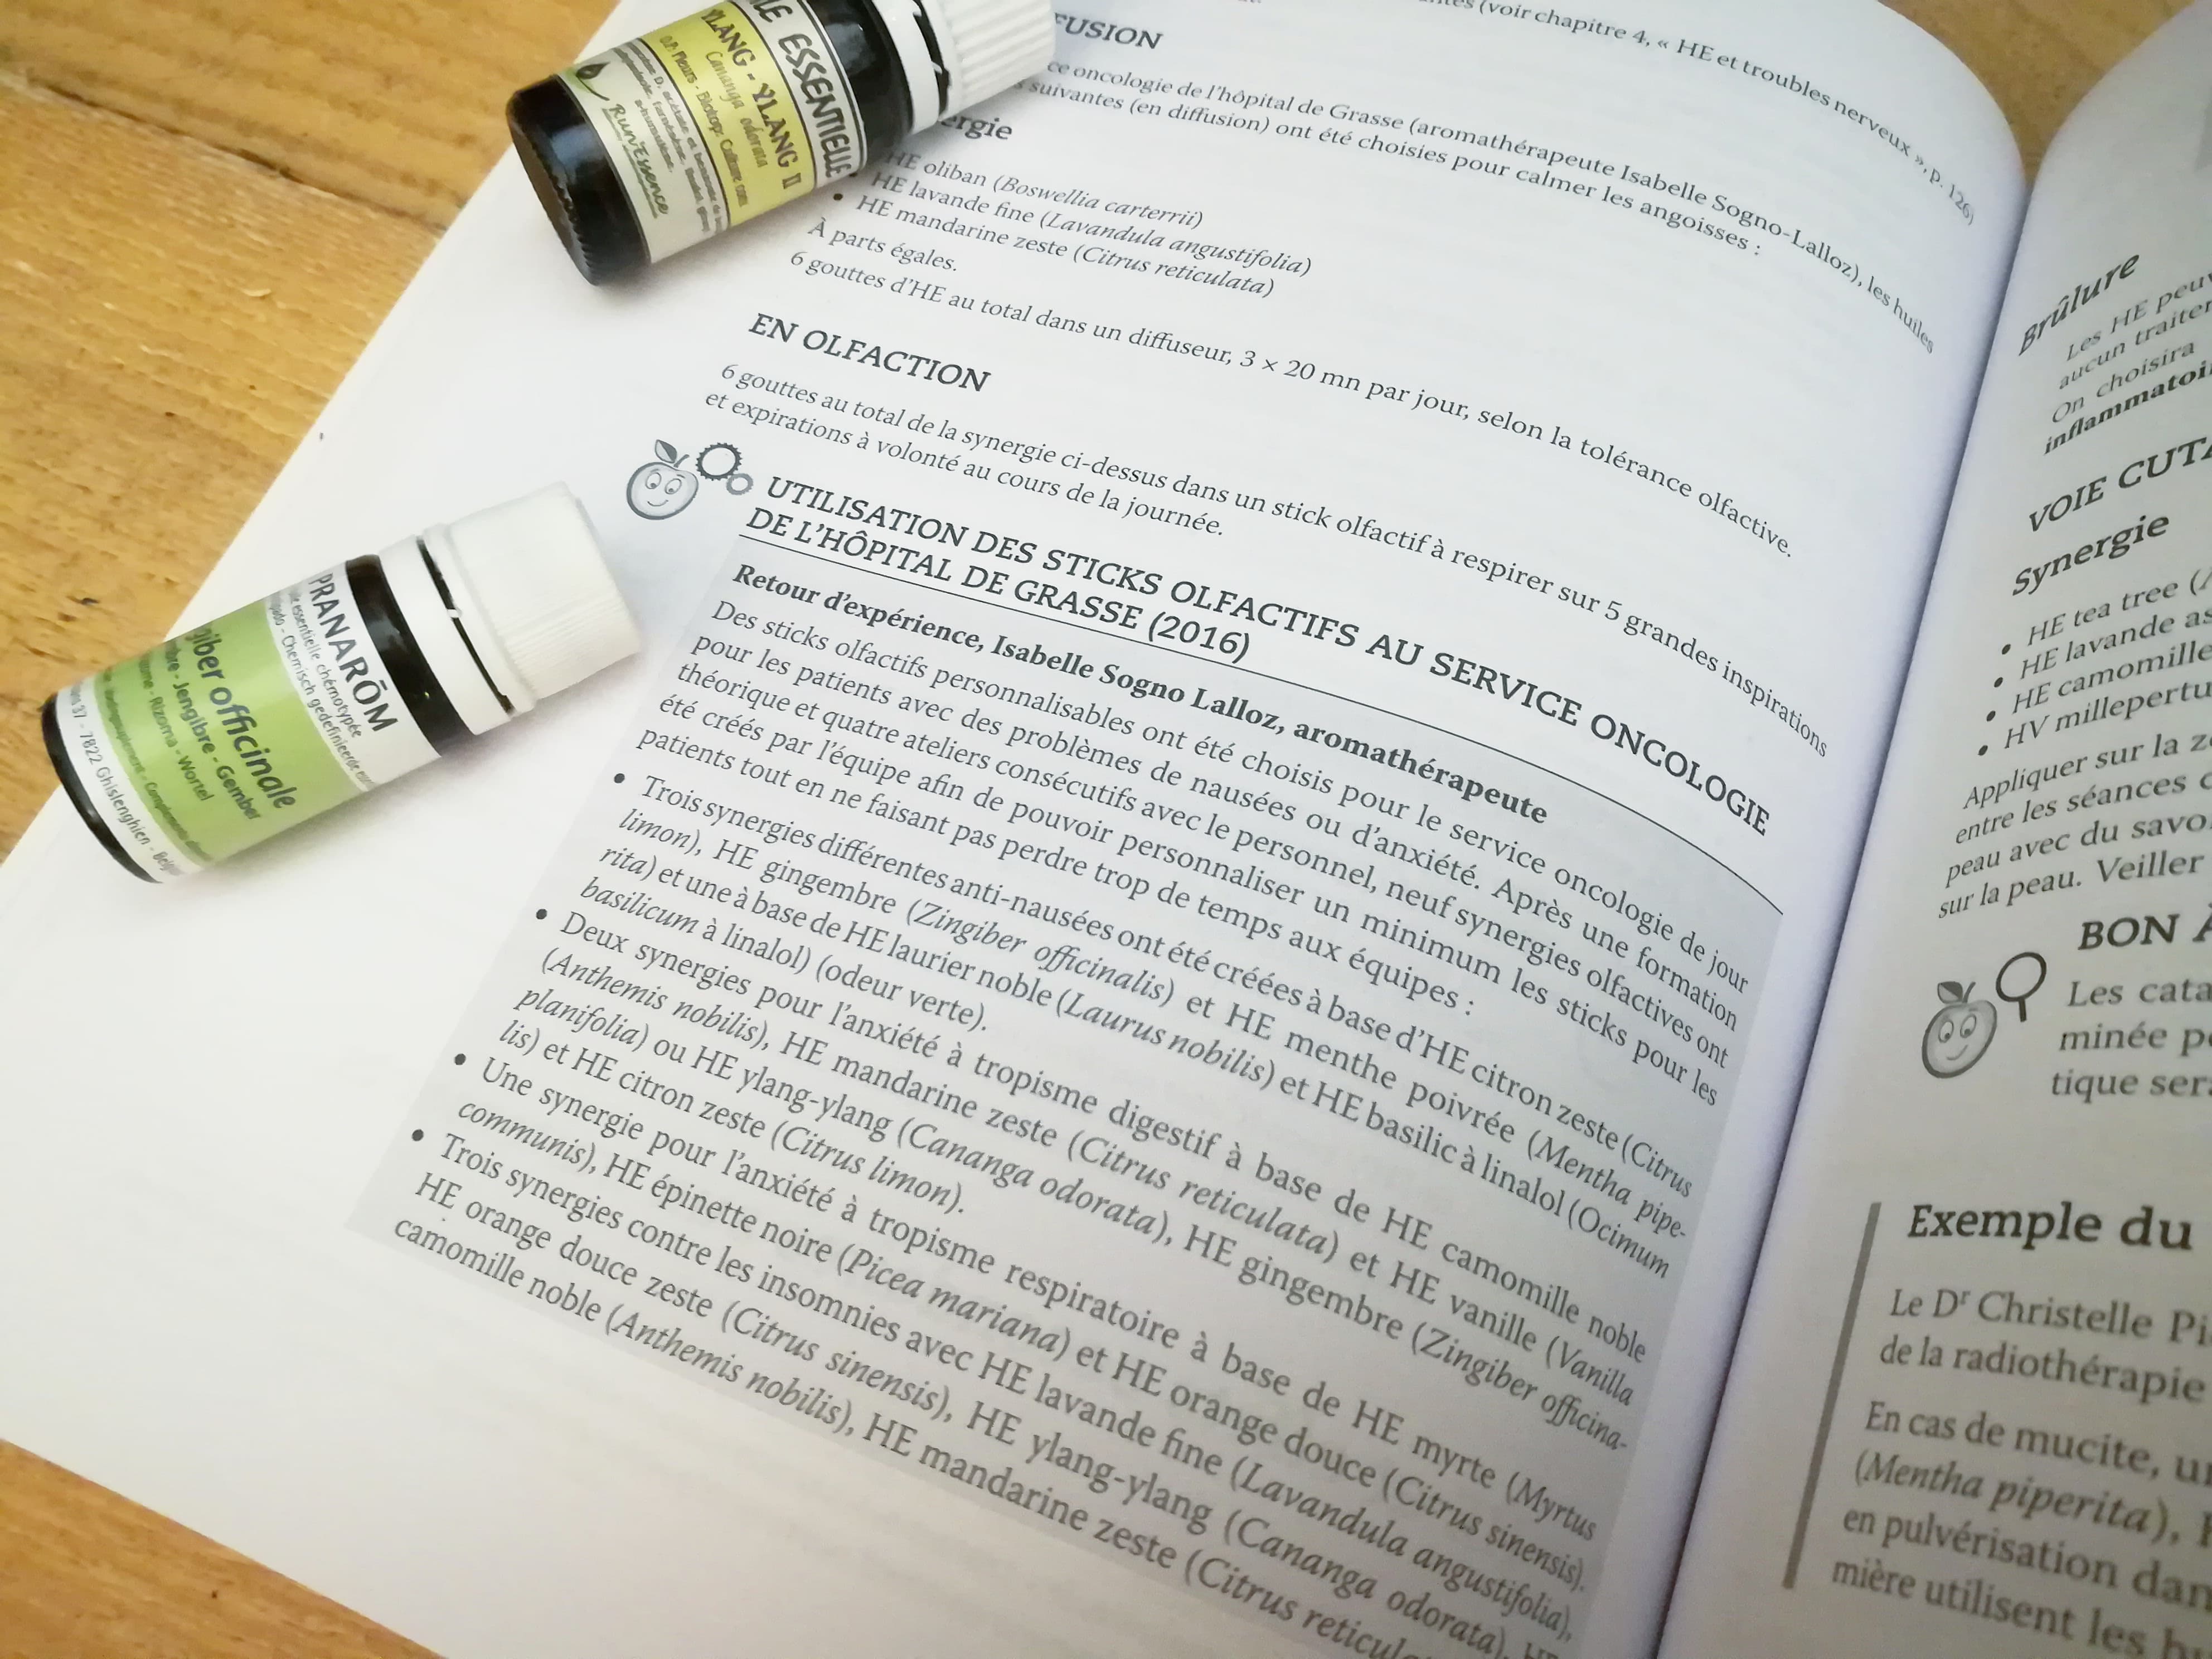 GC - aromatherapie pour les soigants - editions dunod (4)